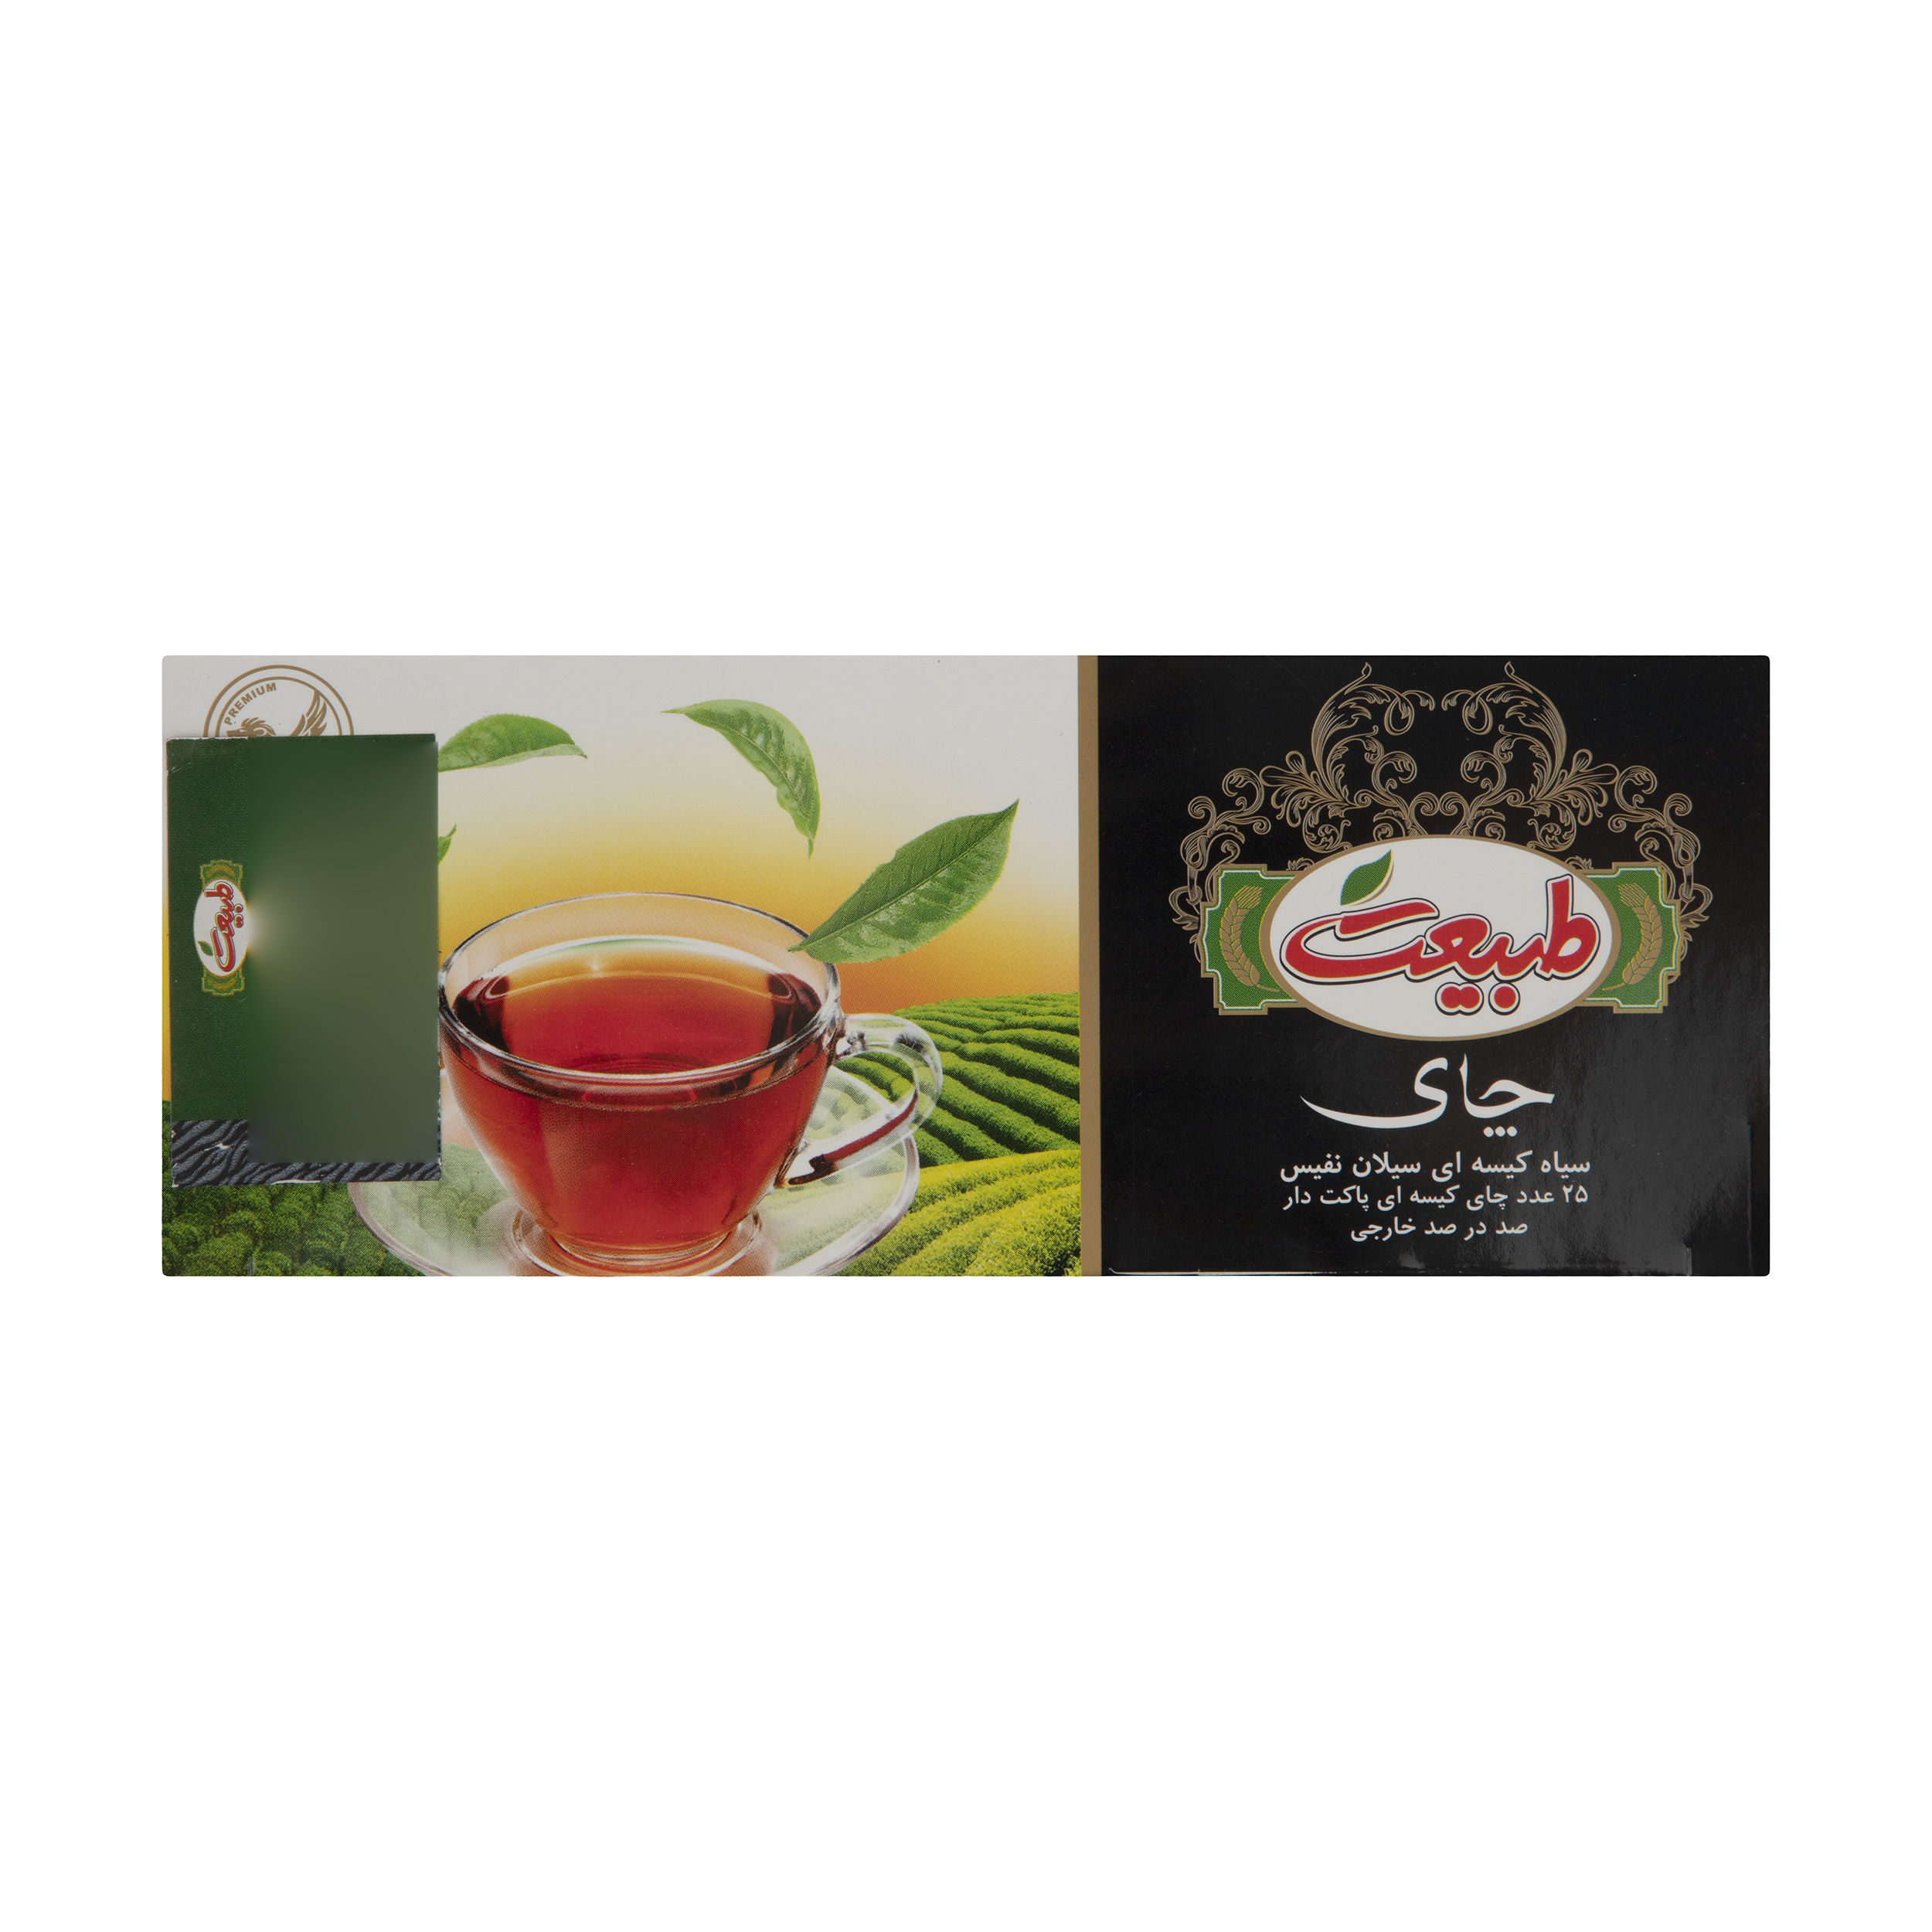  چای سیاه کیسه ای طبیعت - بسته 25 عددی